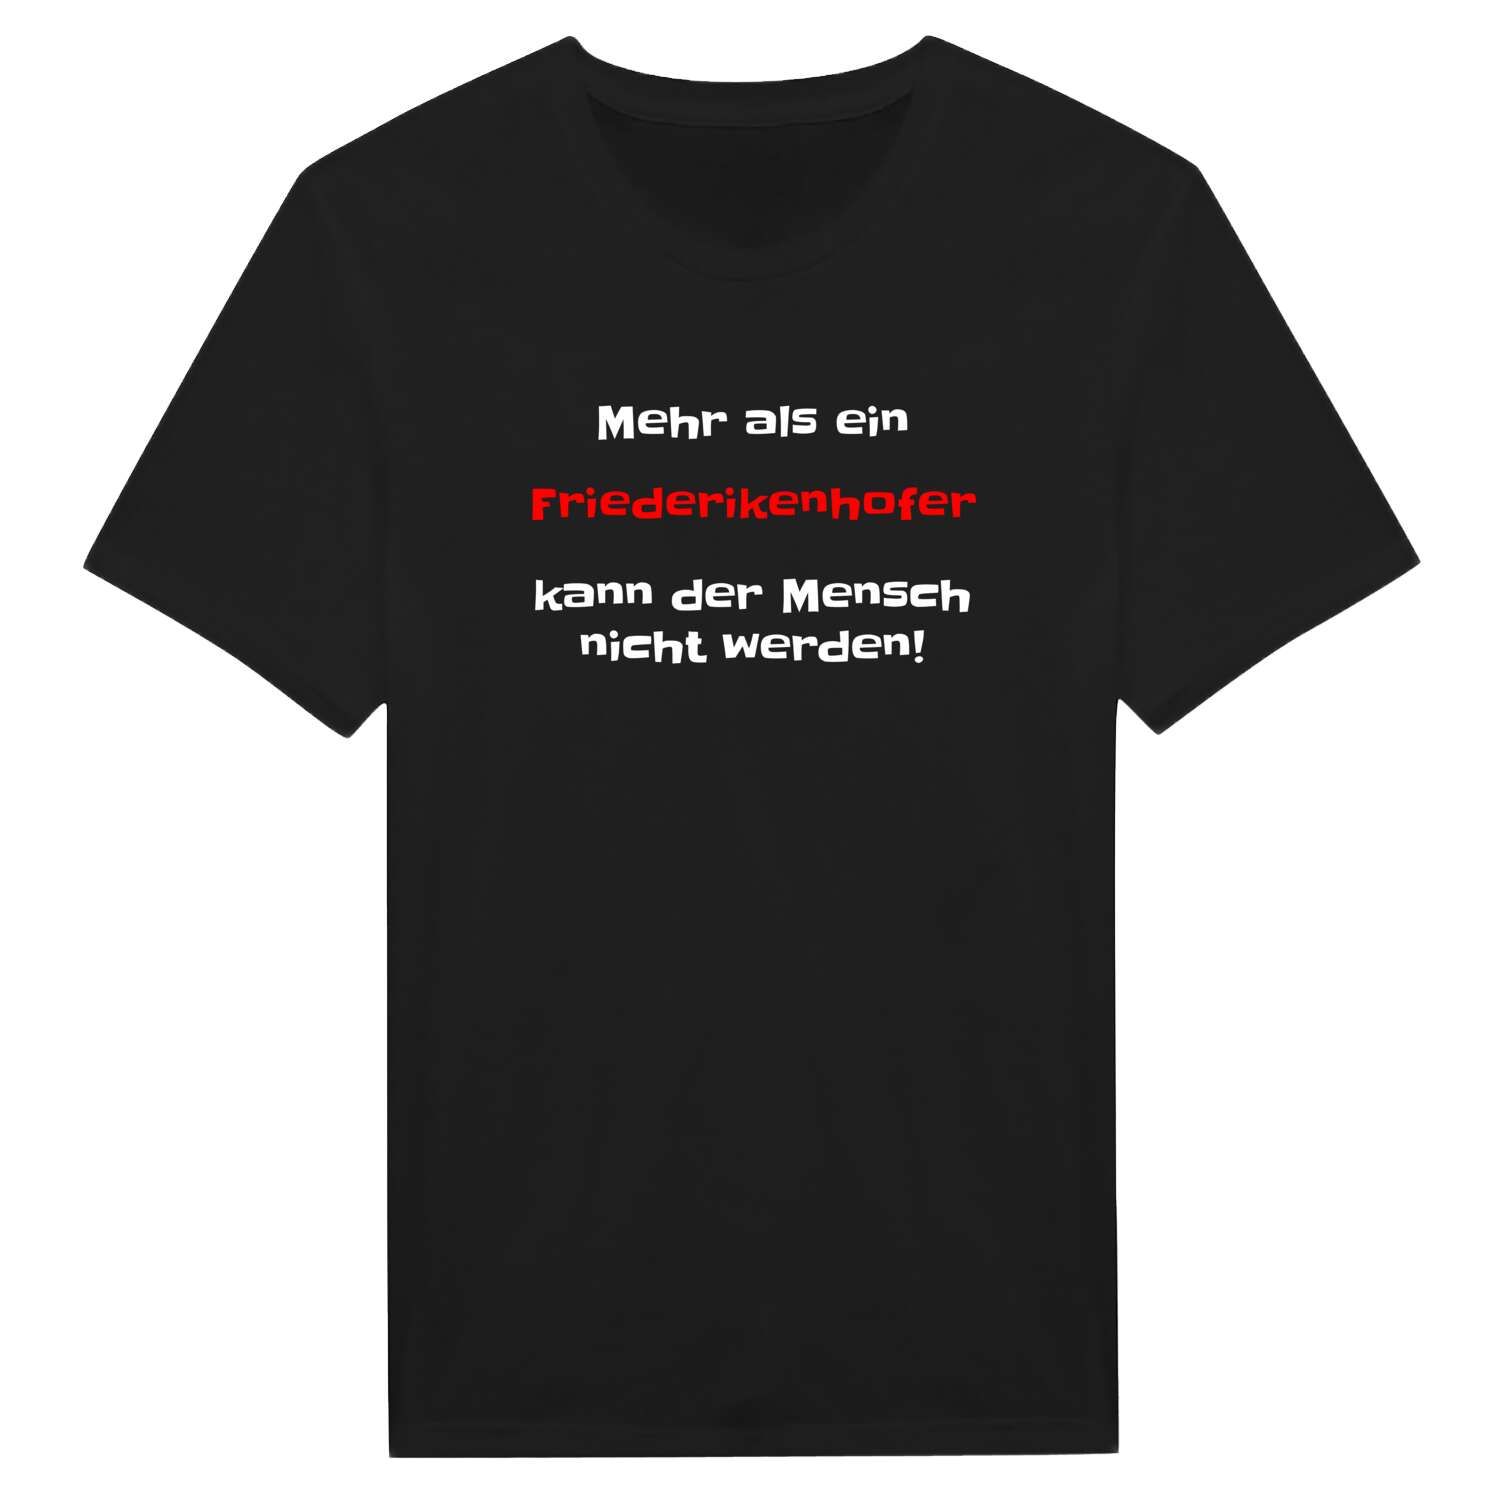 Friederikenhof T-Shirt »Mehr als ein«